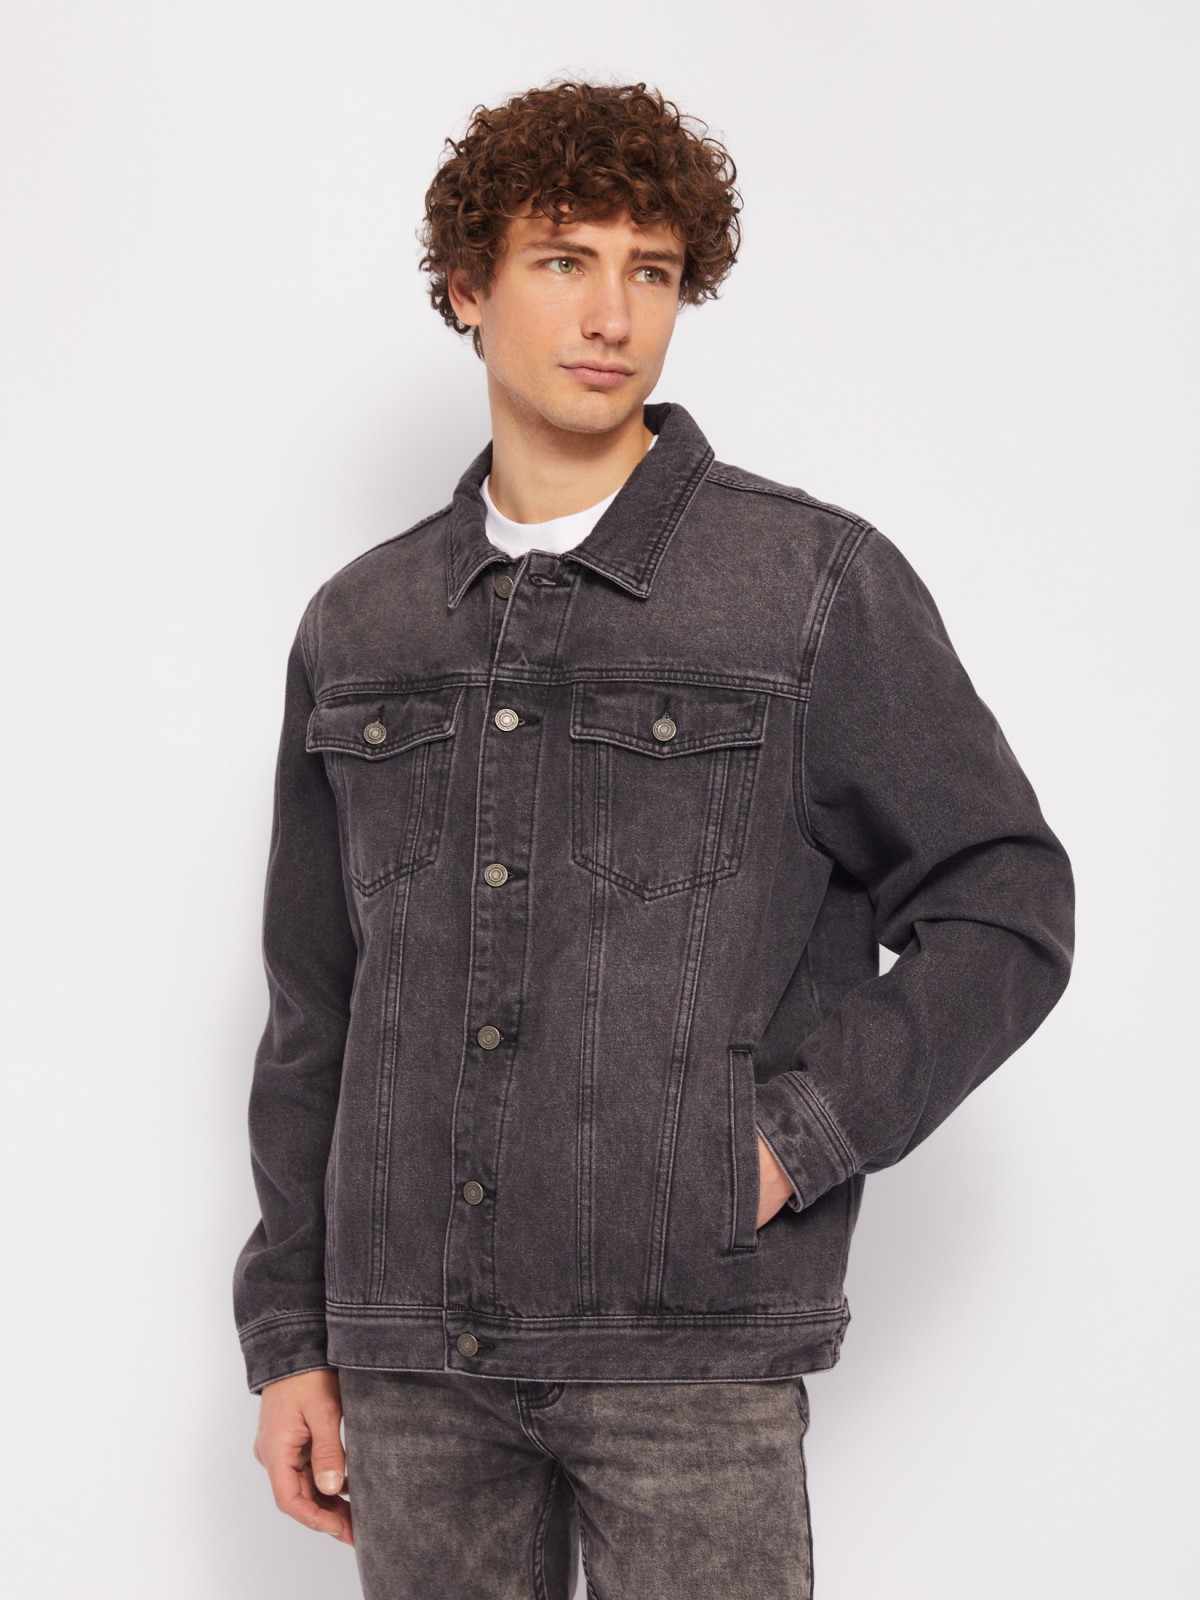 Джинсовая куртка-рубашка из хлопка zolla 214215D4S012, цвет серый, размер S - фото 3